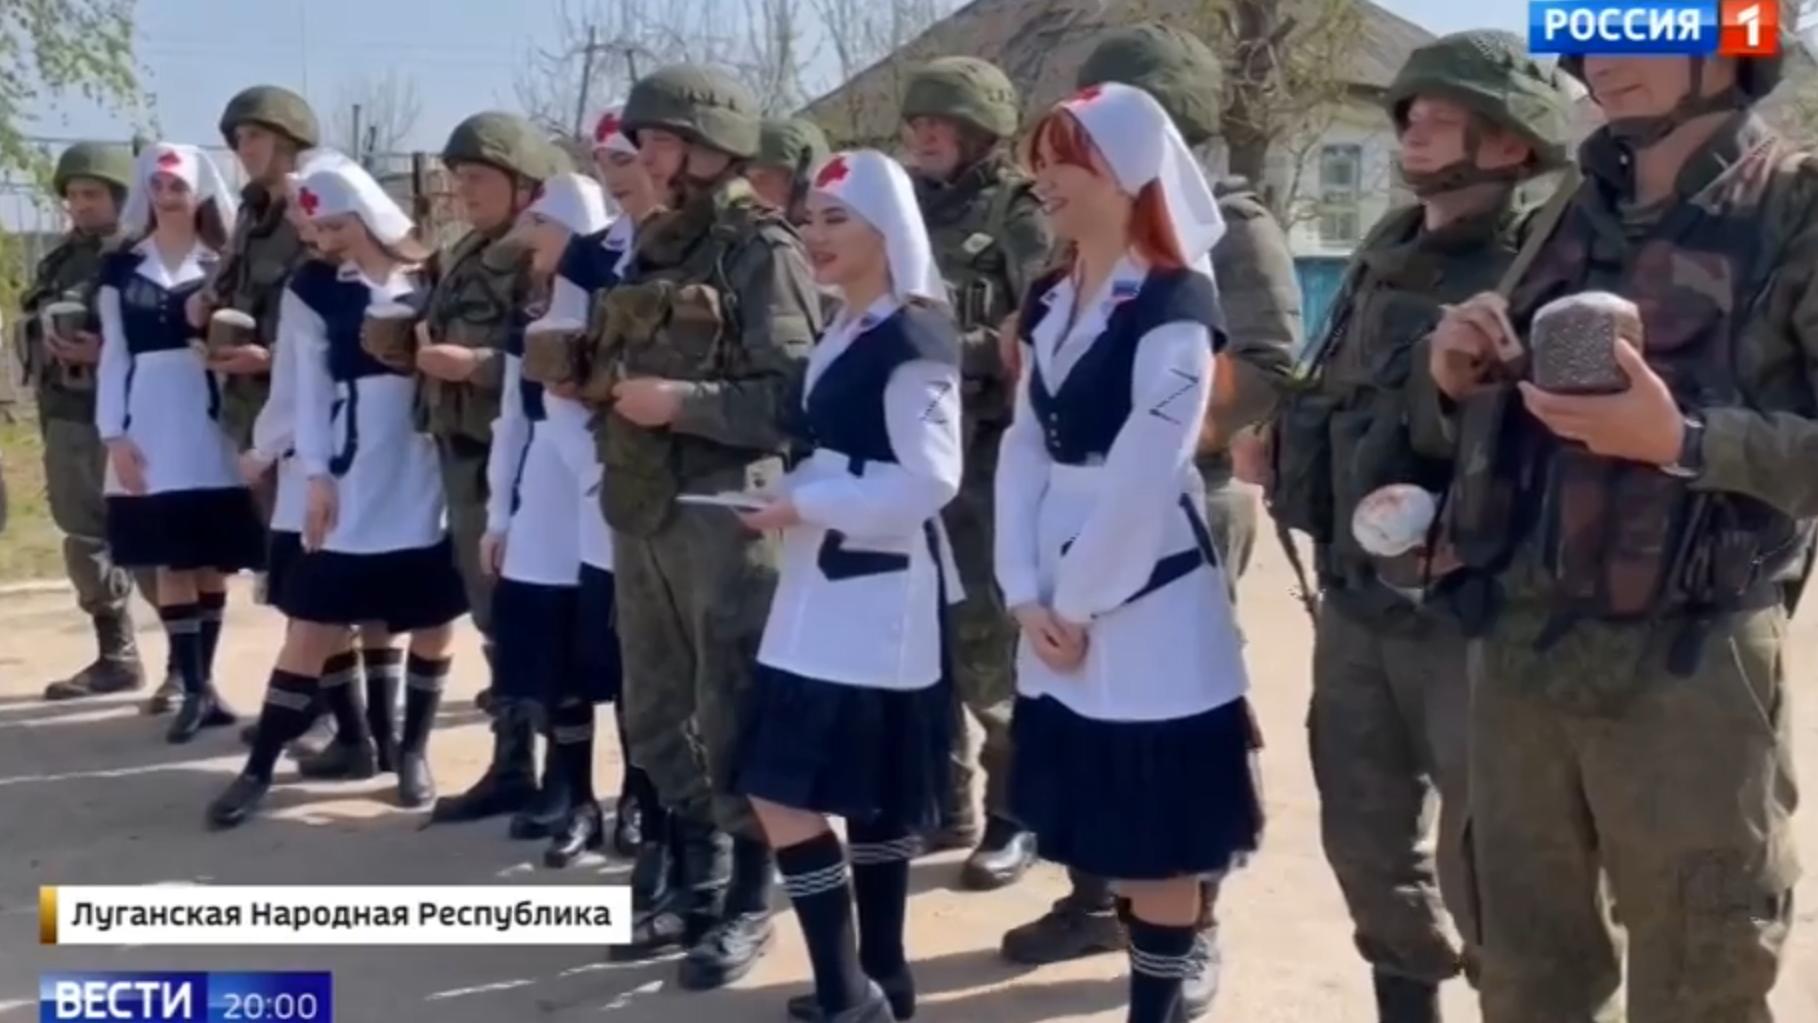 Przebrane za seksowne sanitaruuszki z literą Z młode kobiety pozuja do zdjęcia z żołnierzami, którym przyniosły święcona ciasta